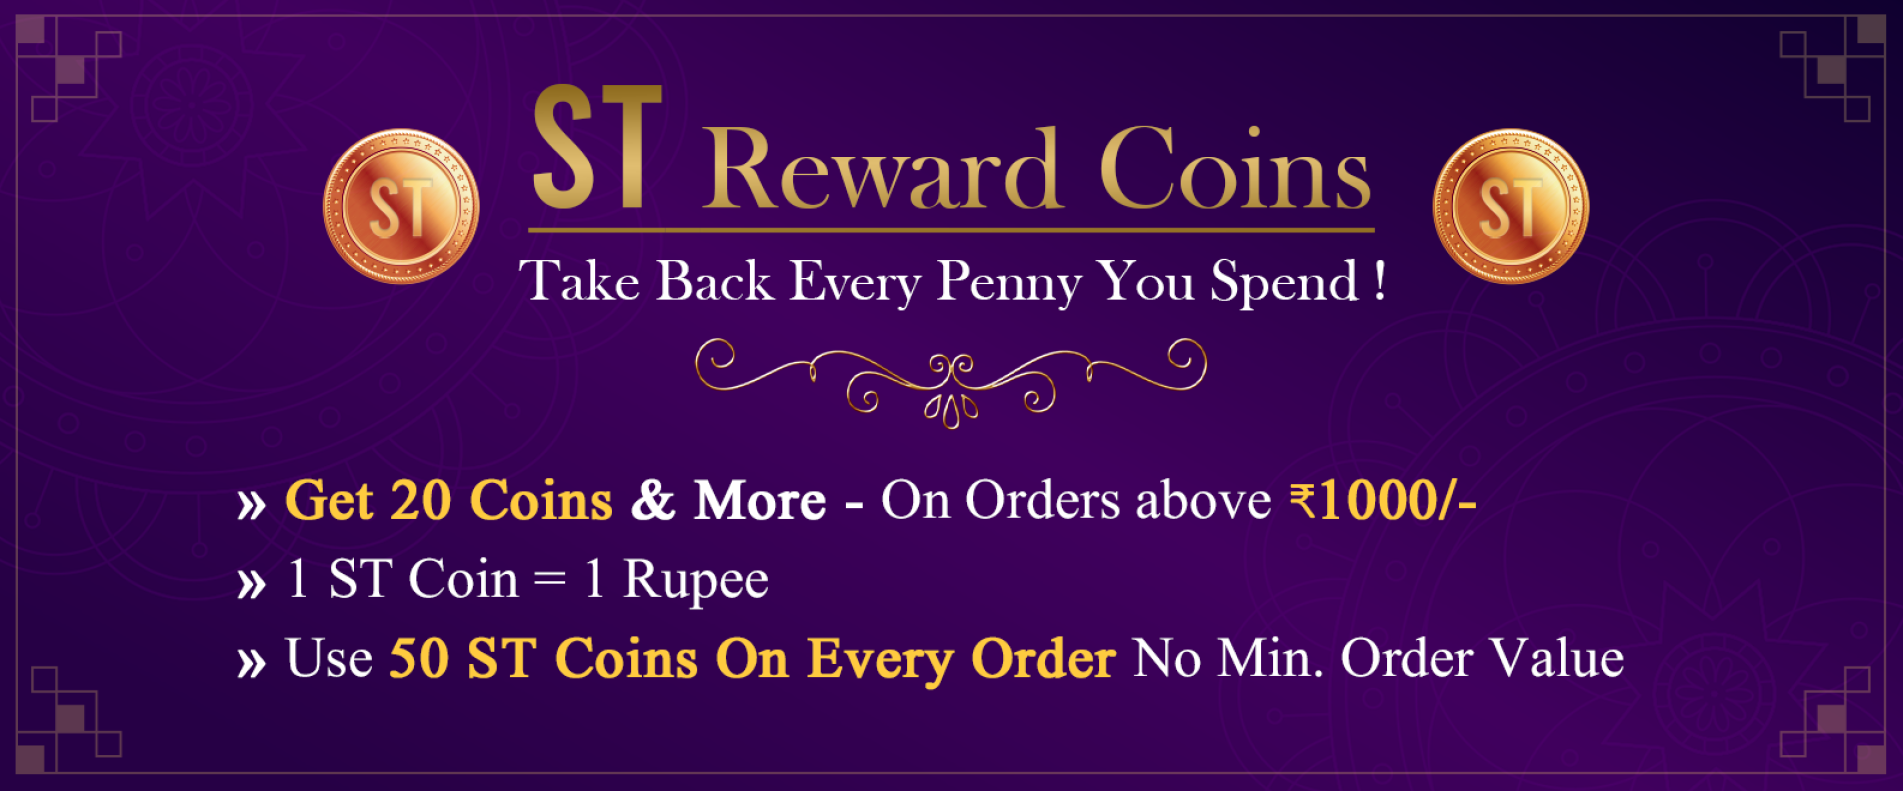 ST Reward Coins